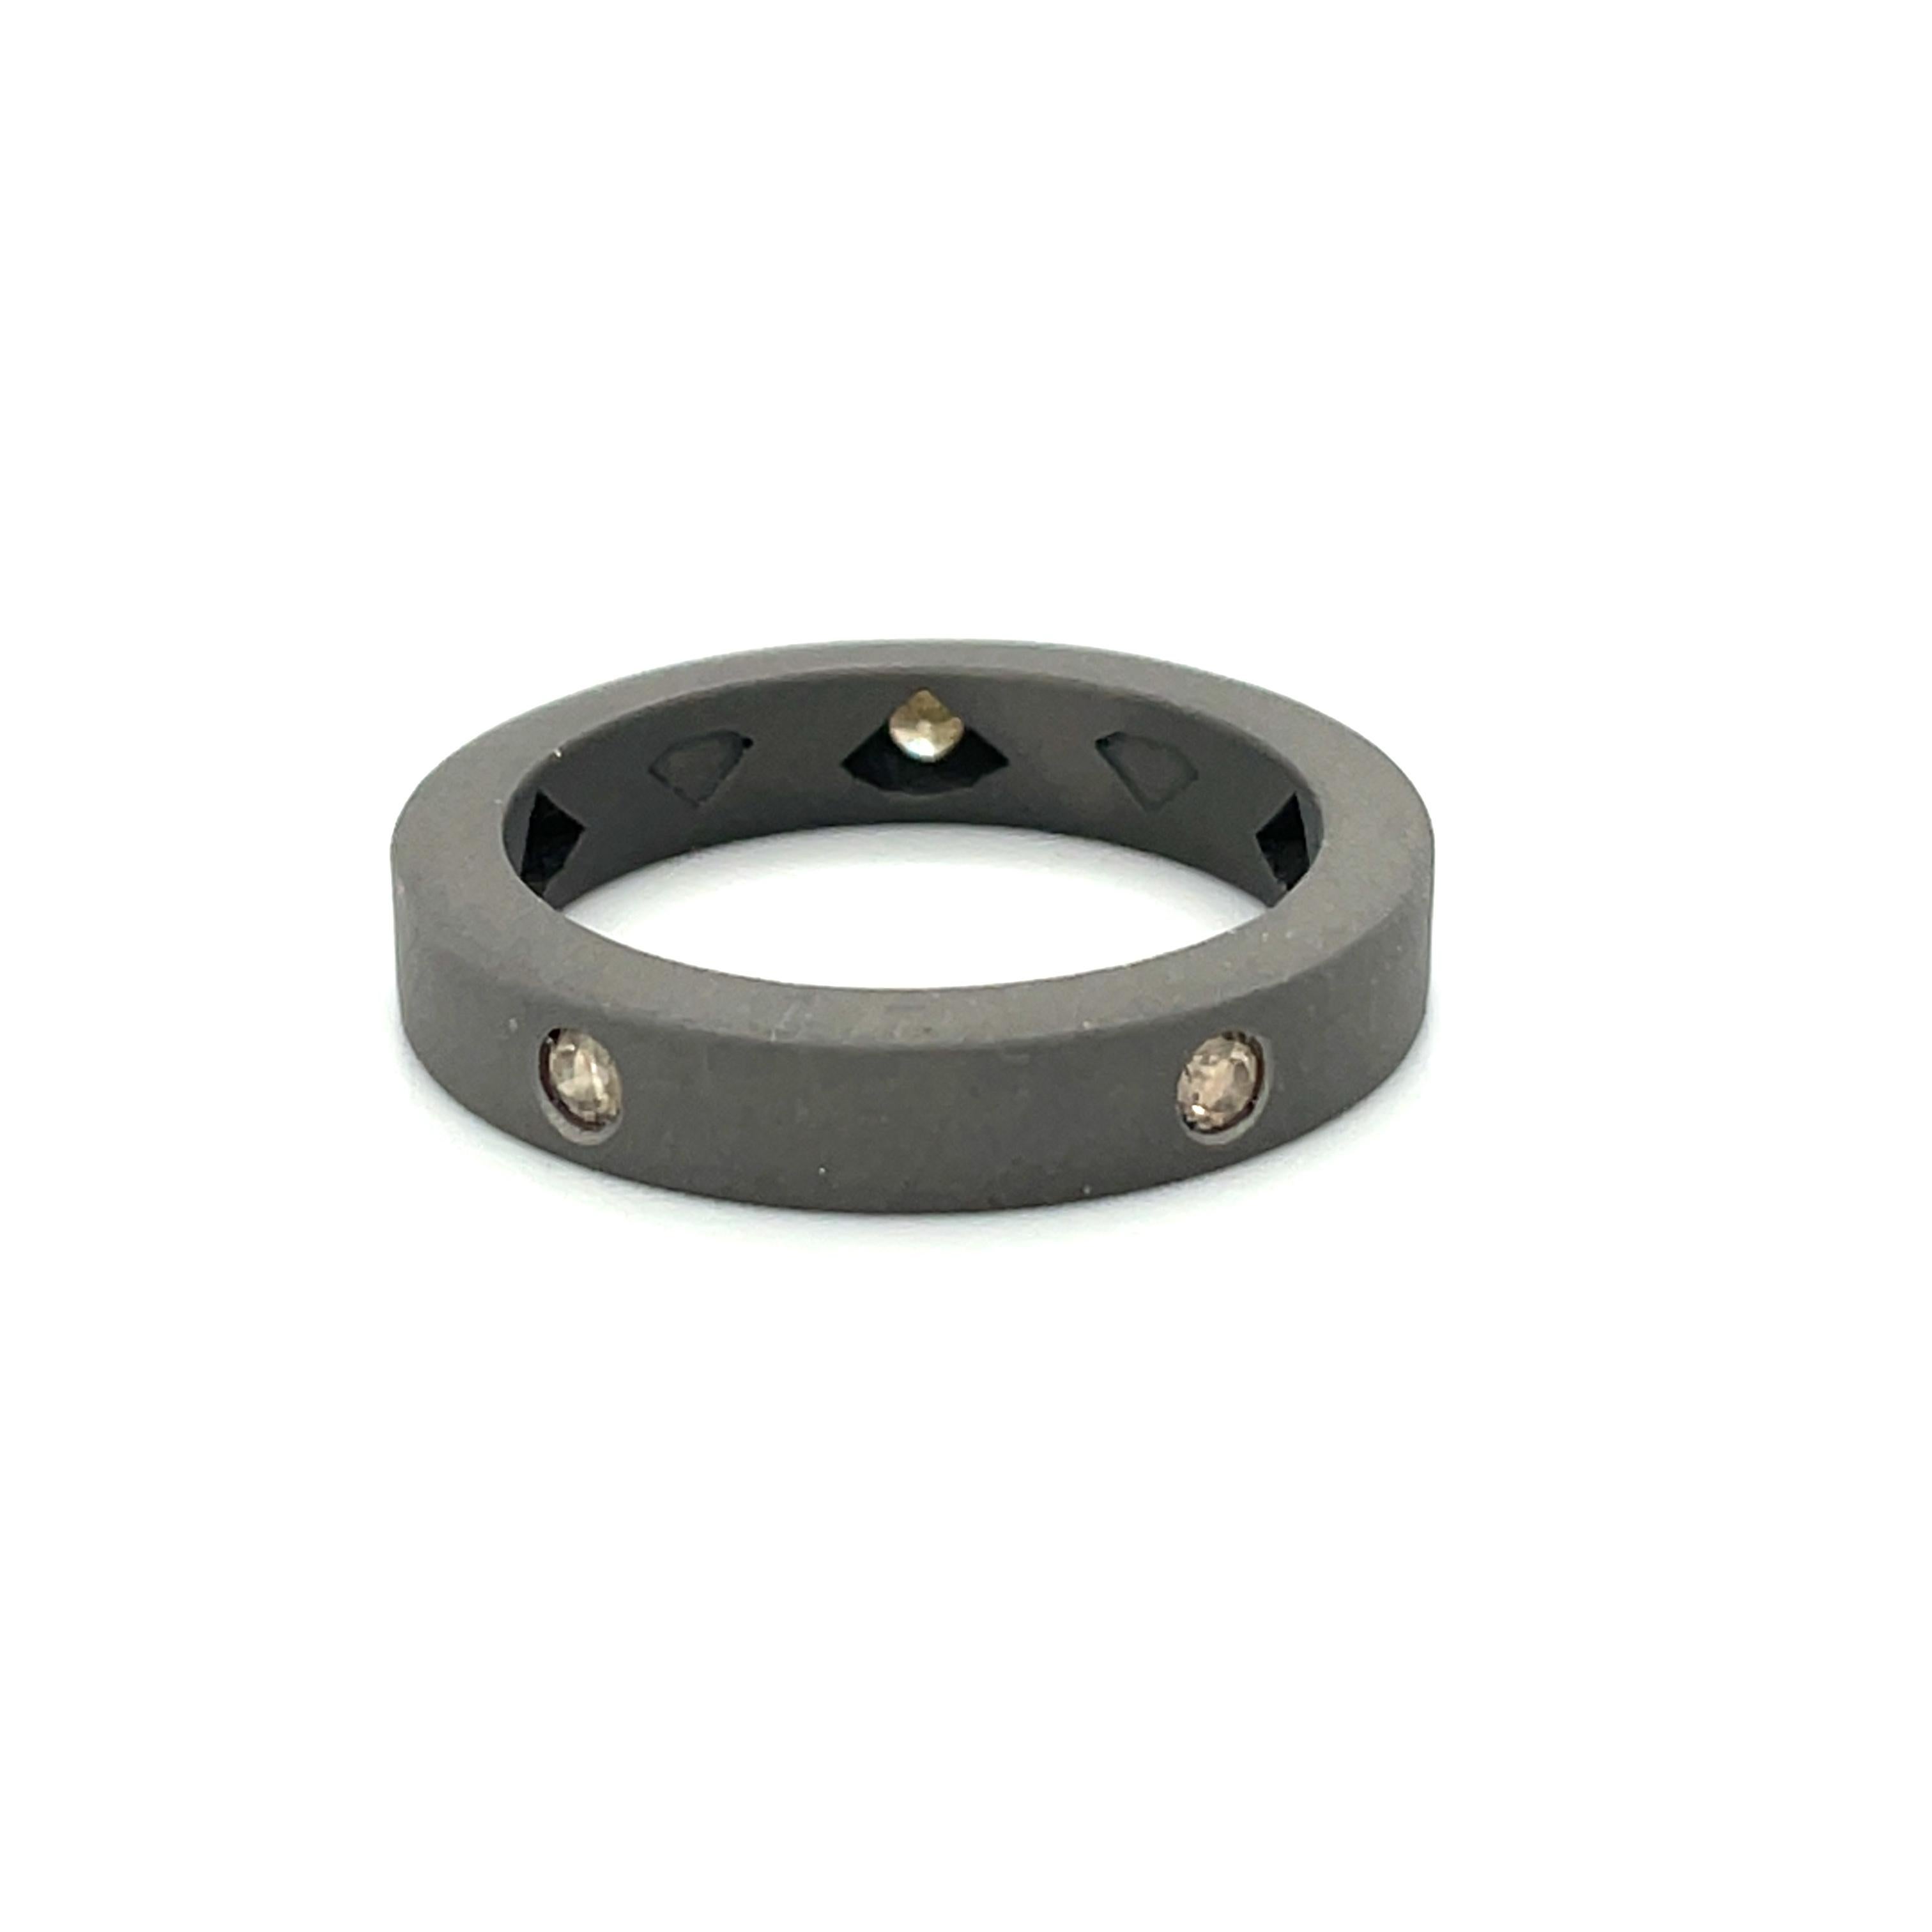 Der Titanring ist aus unserer Heroes Collection'S. Dieser maskuline Ring ist mit einem runden braunen Diamanten von insgesamt 0,25 Karat verziert. Die Ringgröße beträgt 60 mm/9 US-Größe und ist nicht größenverstellbar. Perfekt für einen stilvollen